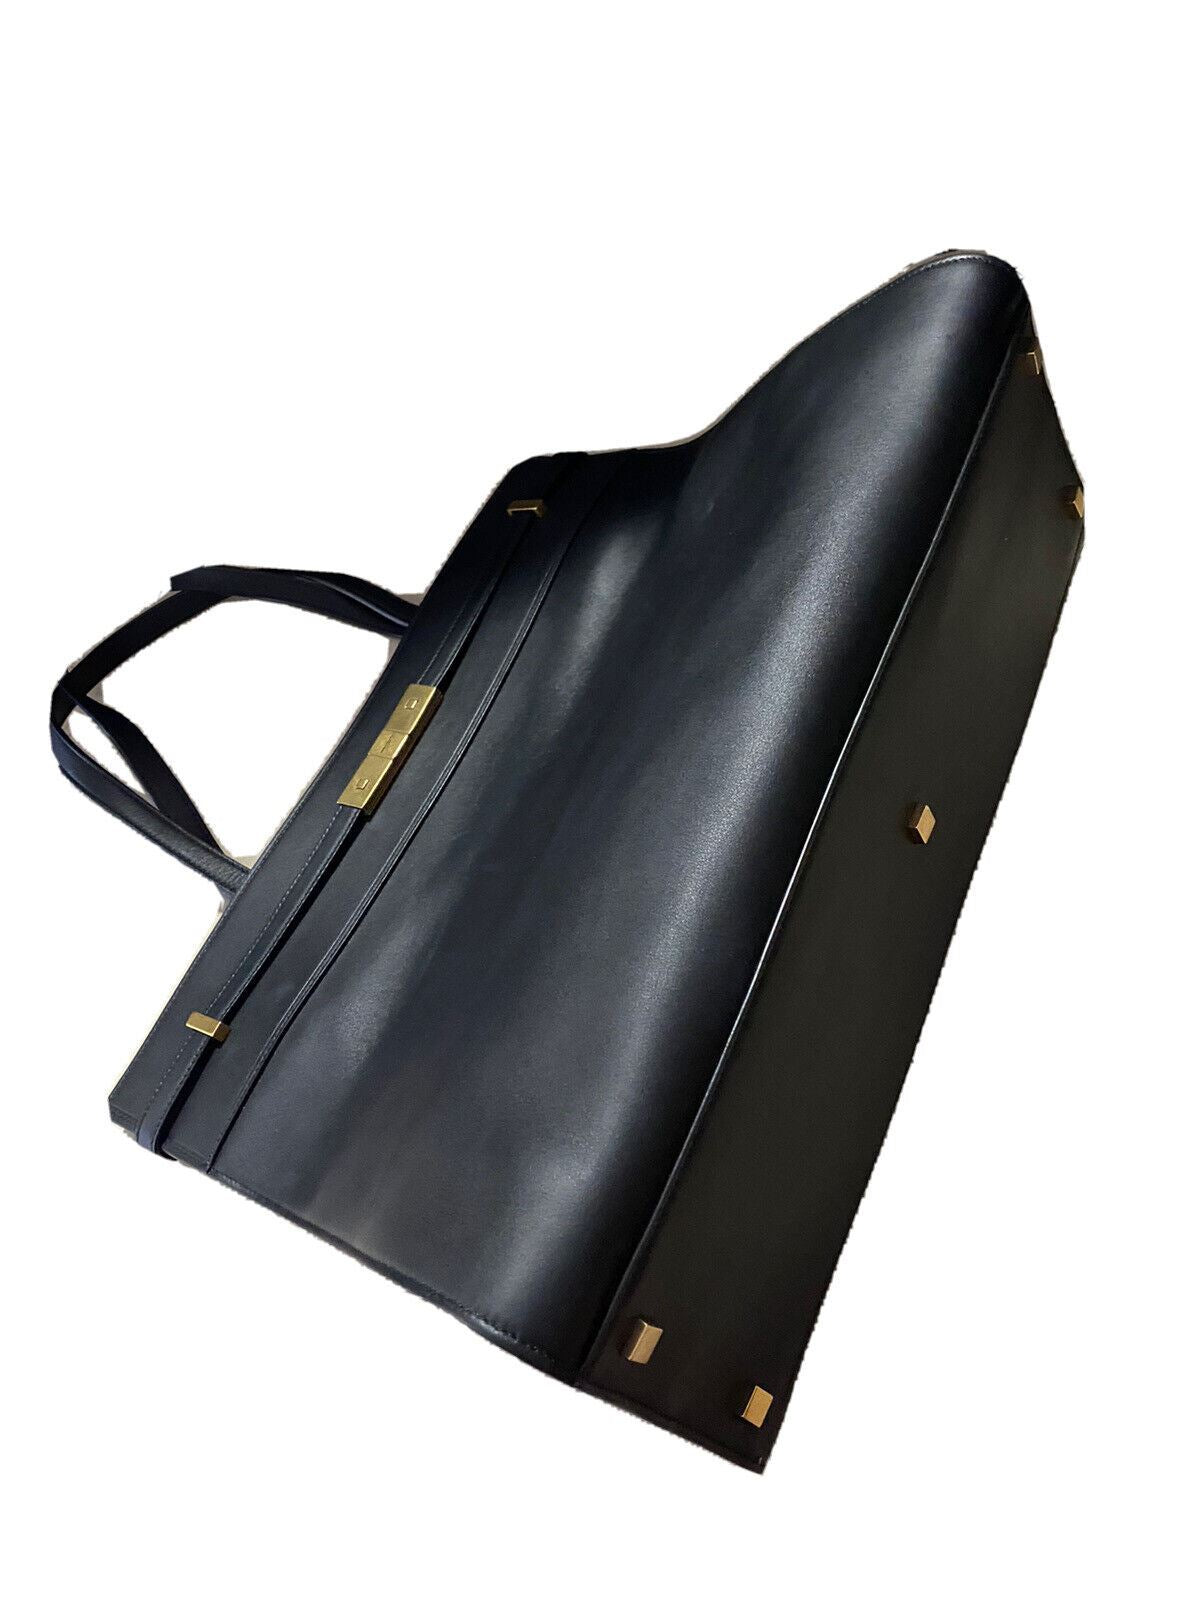 Новая кожаная большая сумка Saint Laurent YSL с ручкой сверху, черная, Италия, $2350